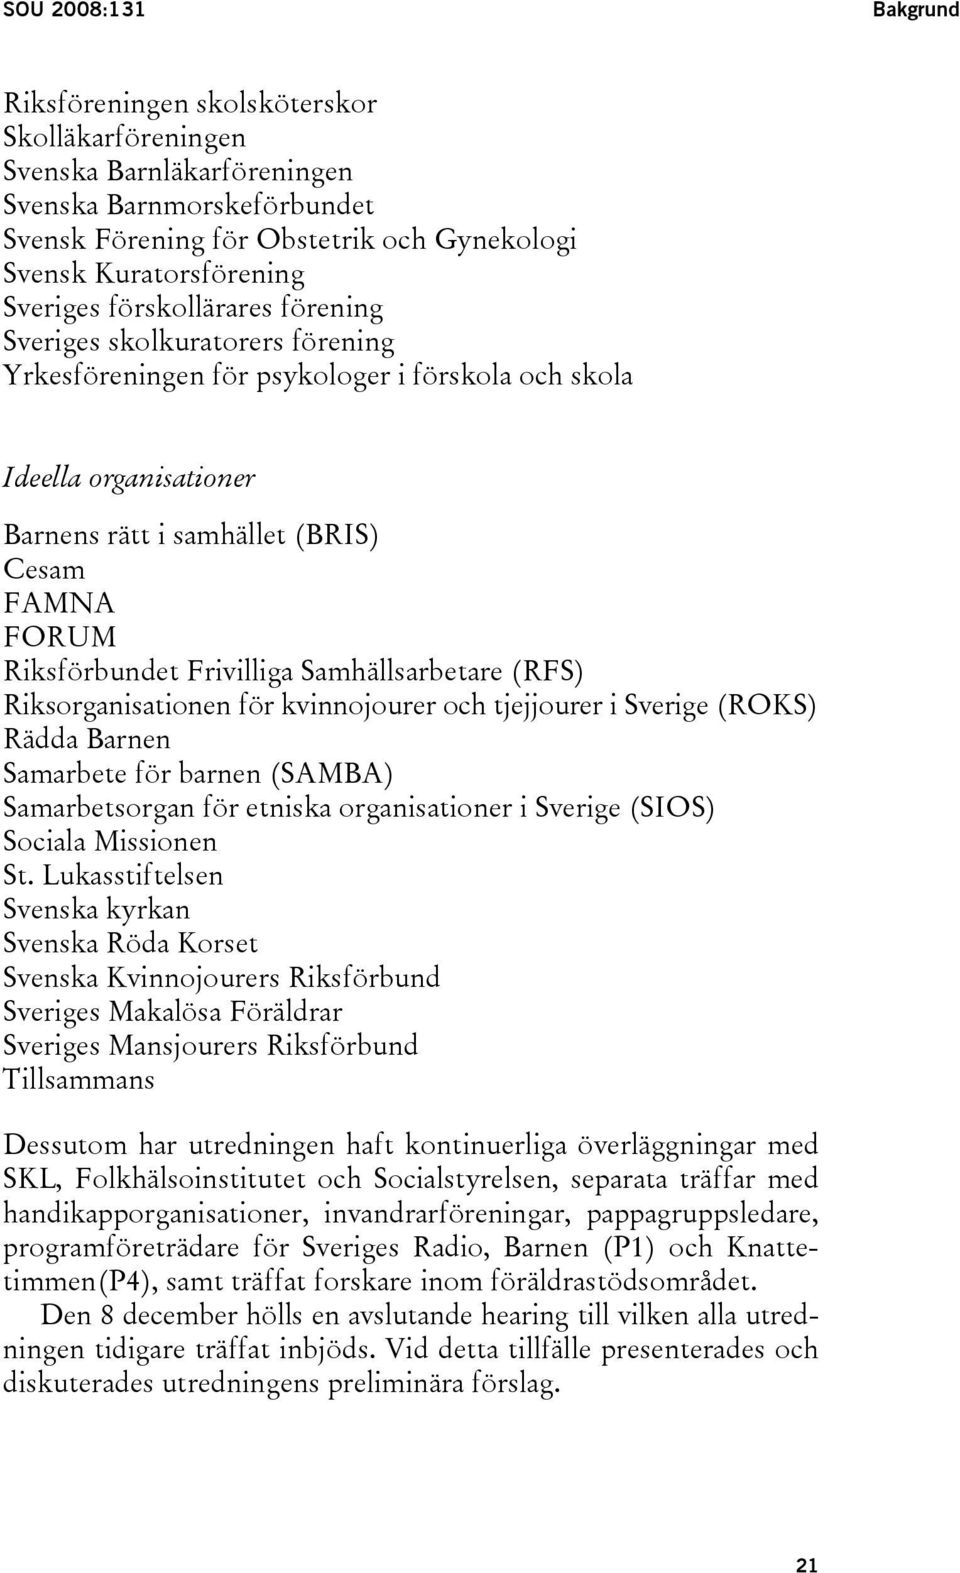 Riksförbundet Frivilliga Samhällsarbetare (RFS) Riksorganisationen för kvinnojourer och tjejjourer i Sverige (ROKS) Rädda Barnen Samarbete för barnen (SAMBA) Samarbetsorgan för etniska organisationer